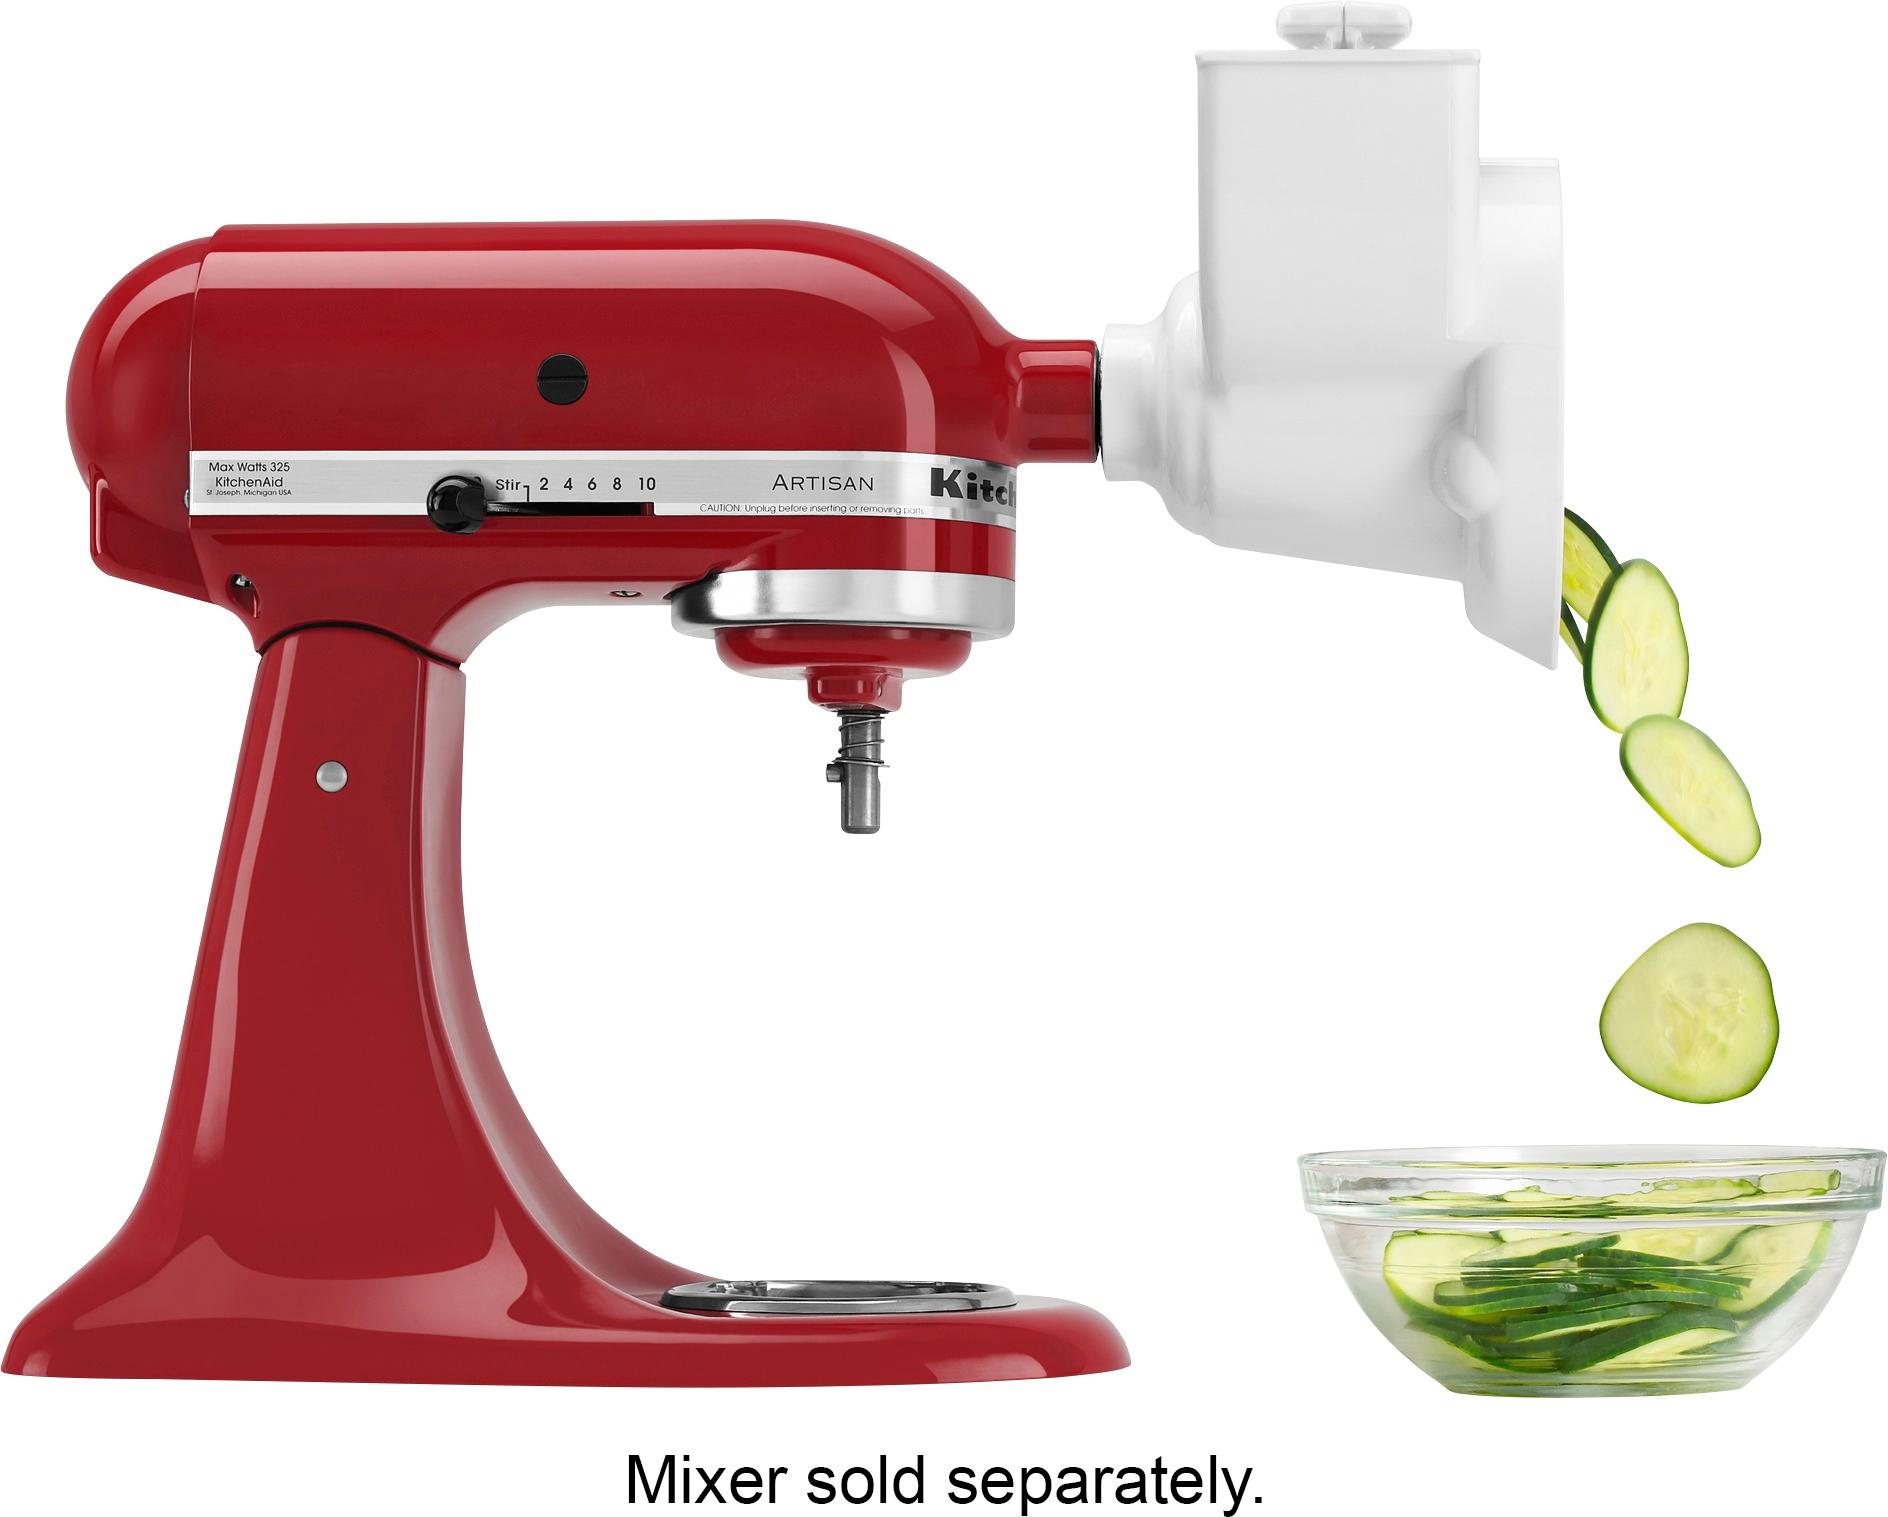 BANKKY Slicer Shredder Attachment for KitchenAid Stand Mixer, Food Slicer  for KitchenAid Mixer, Chee